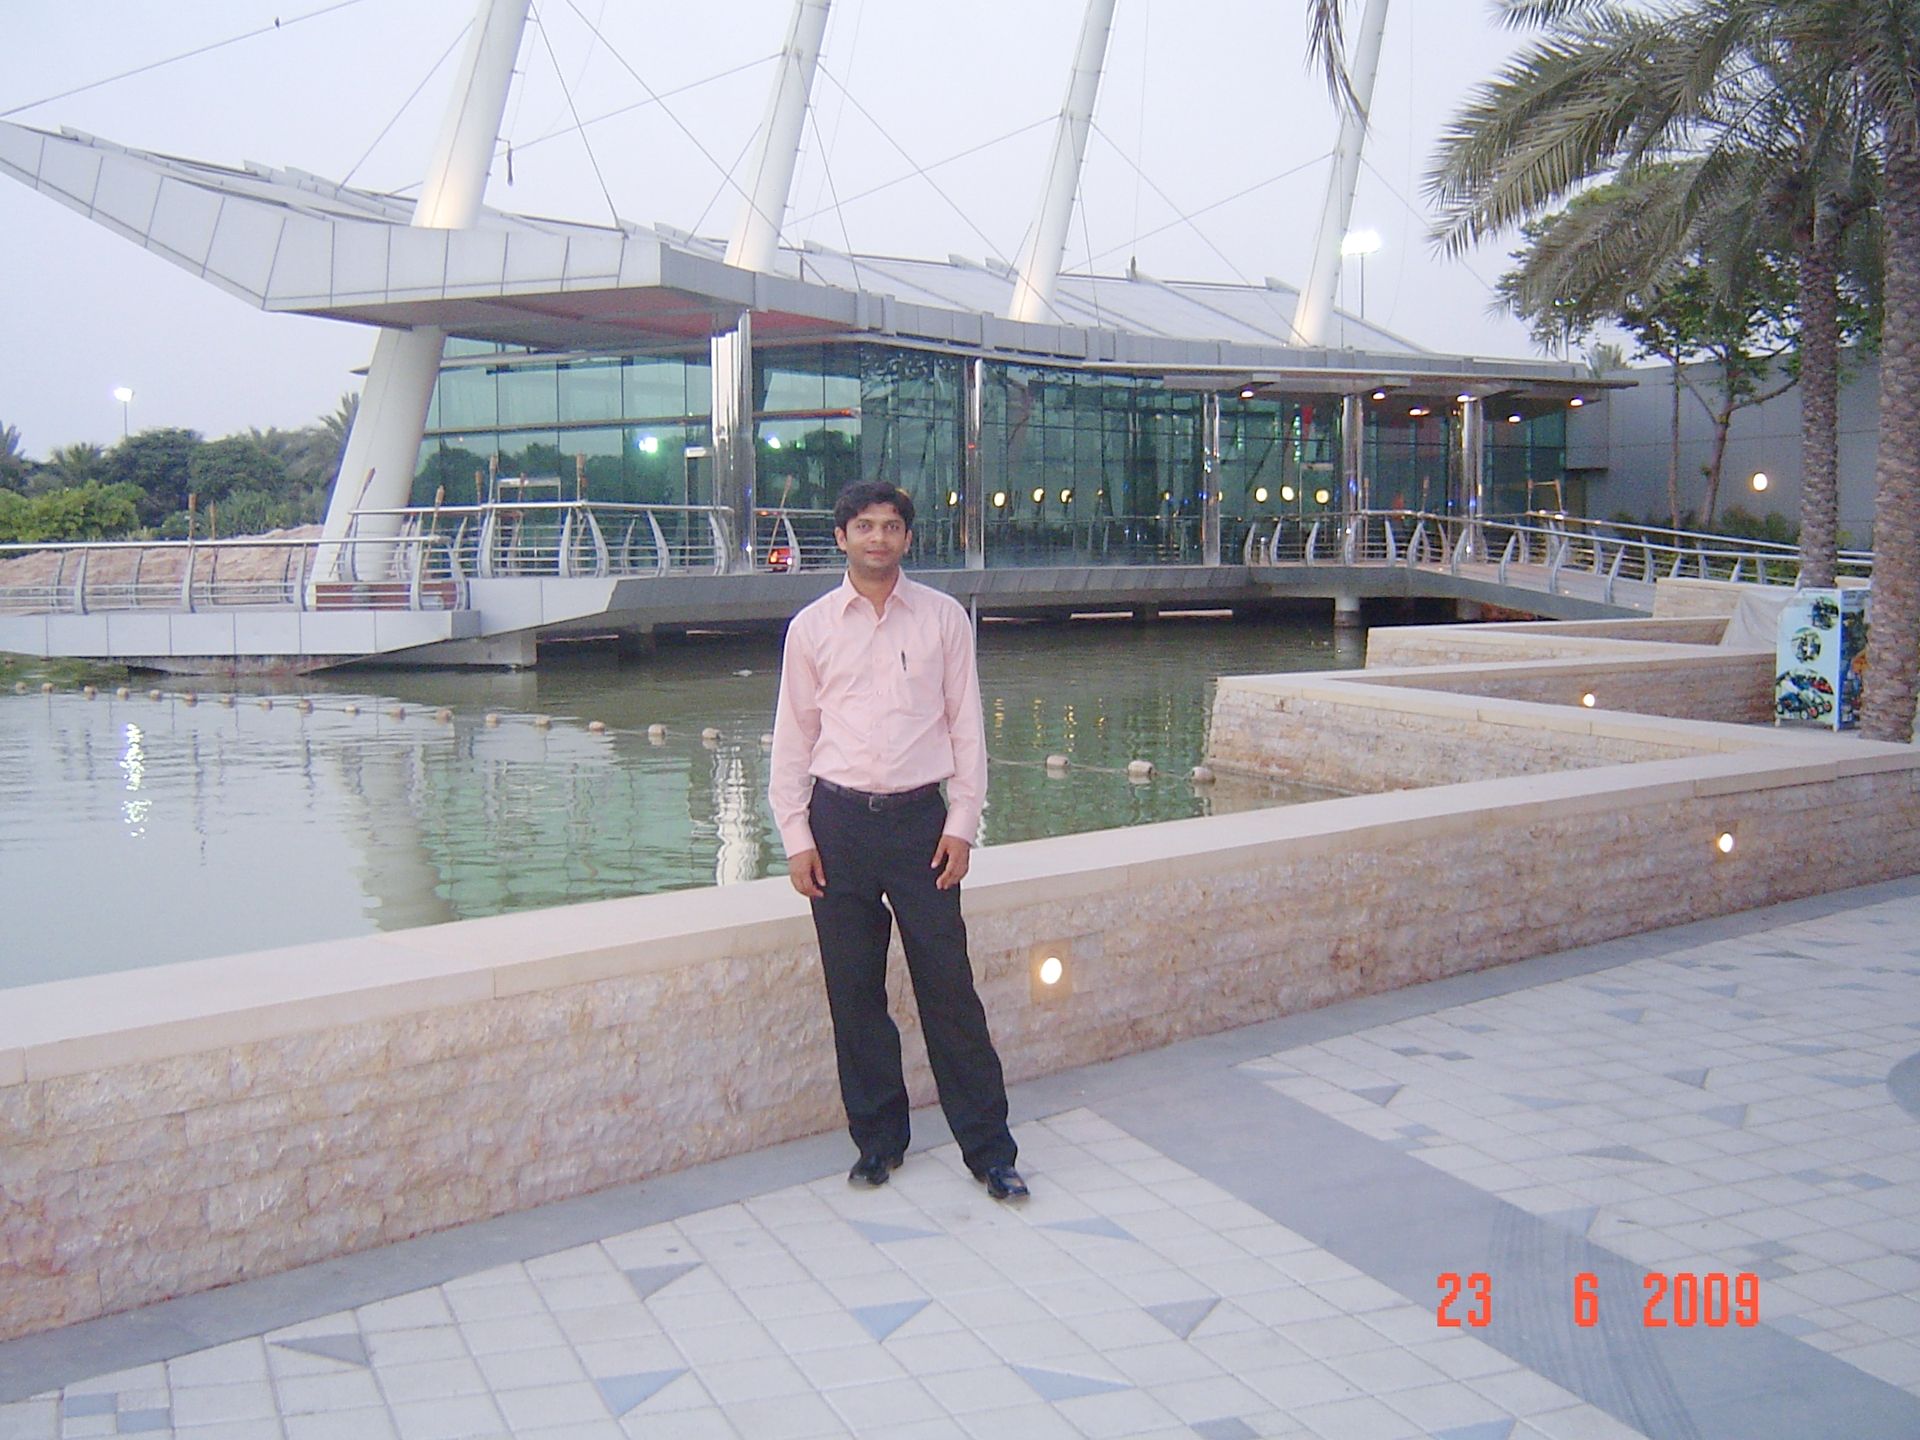 Amin UAE Dubai